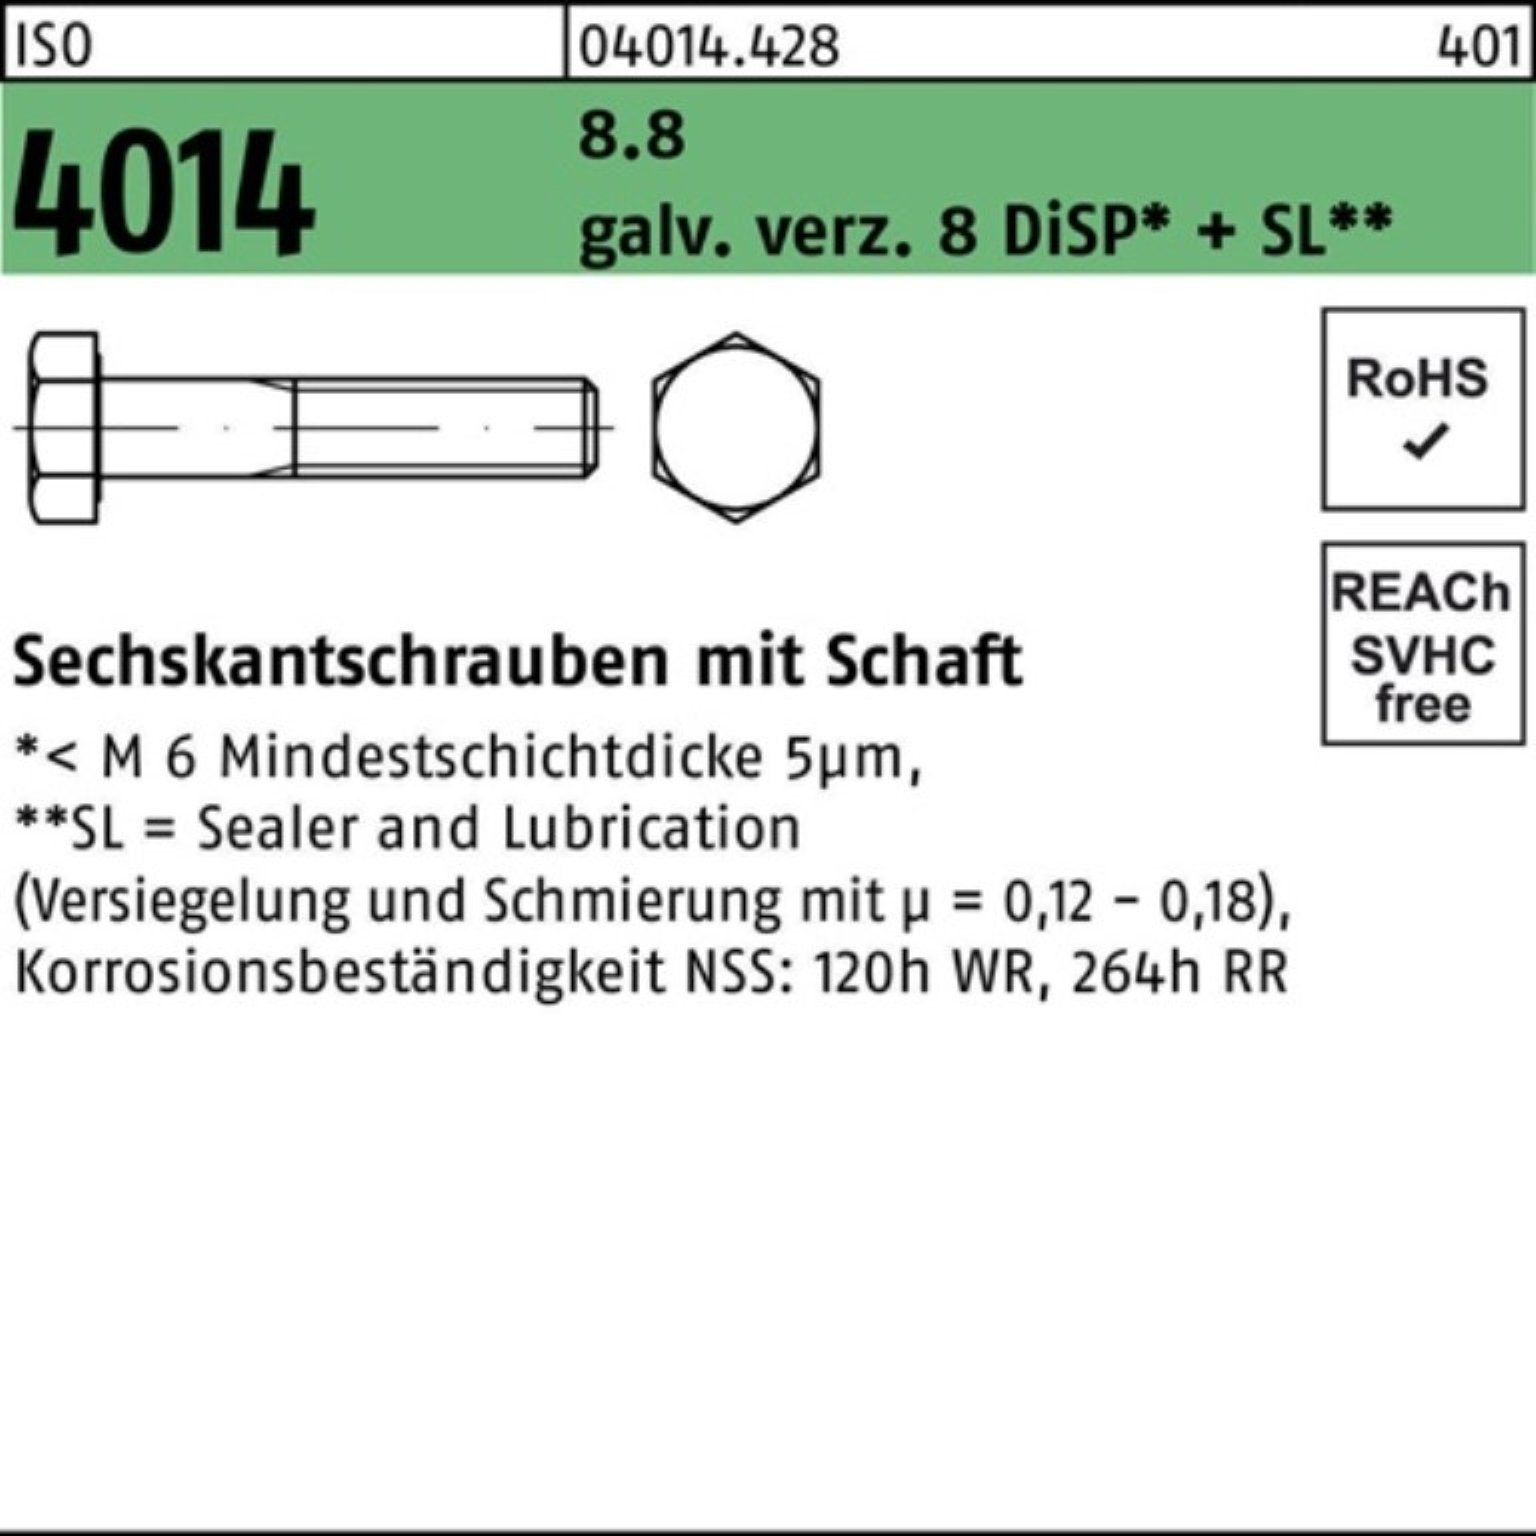 M24x120 galv.verz. ISO Sechskantschraube Sechskantschraube 100er 4014 Schaft Pack 8.8 8 Bufab